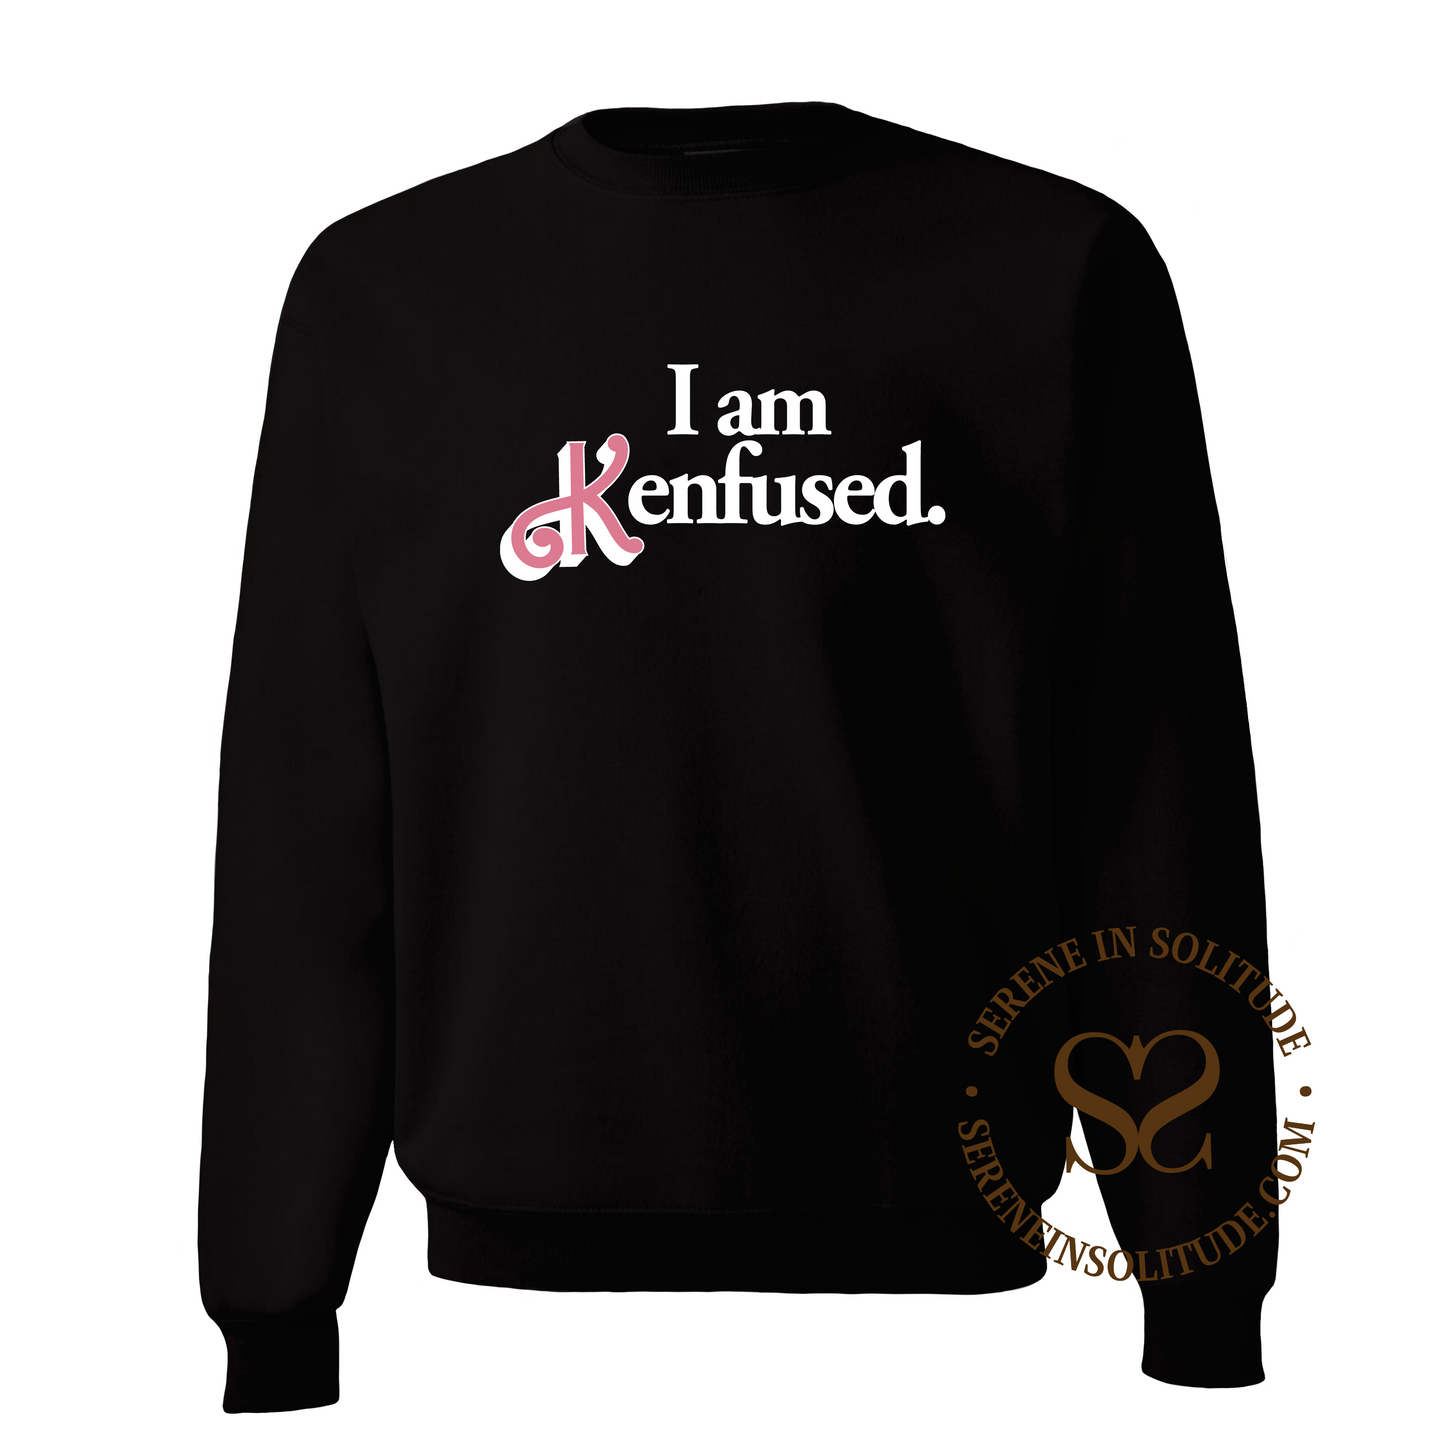 Kenfused Sweatshirt